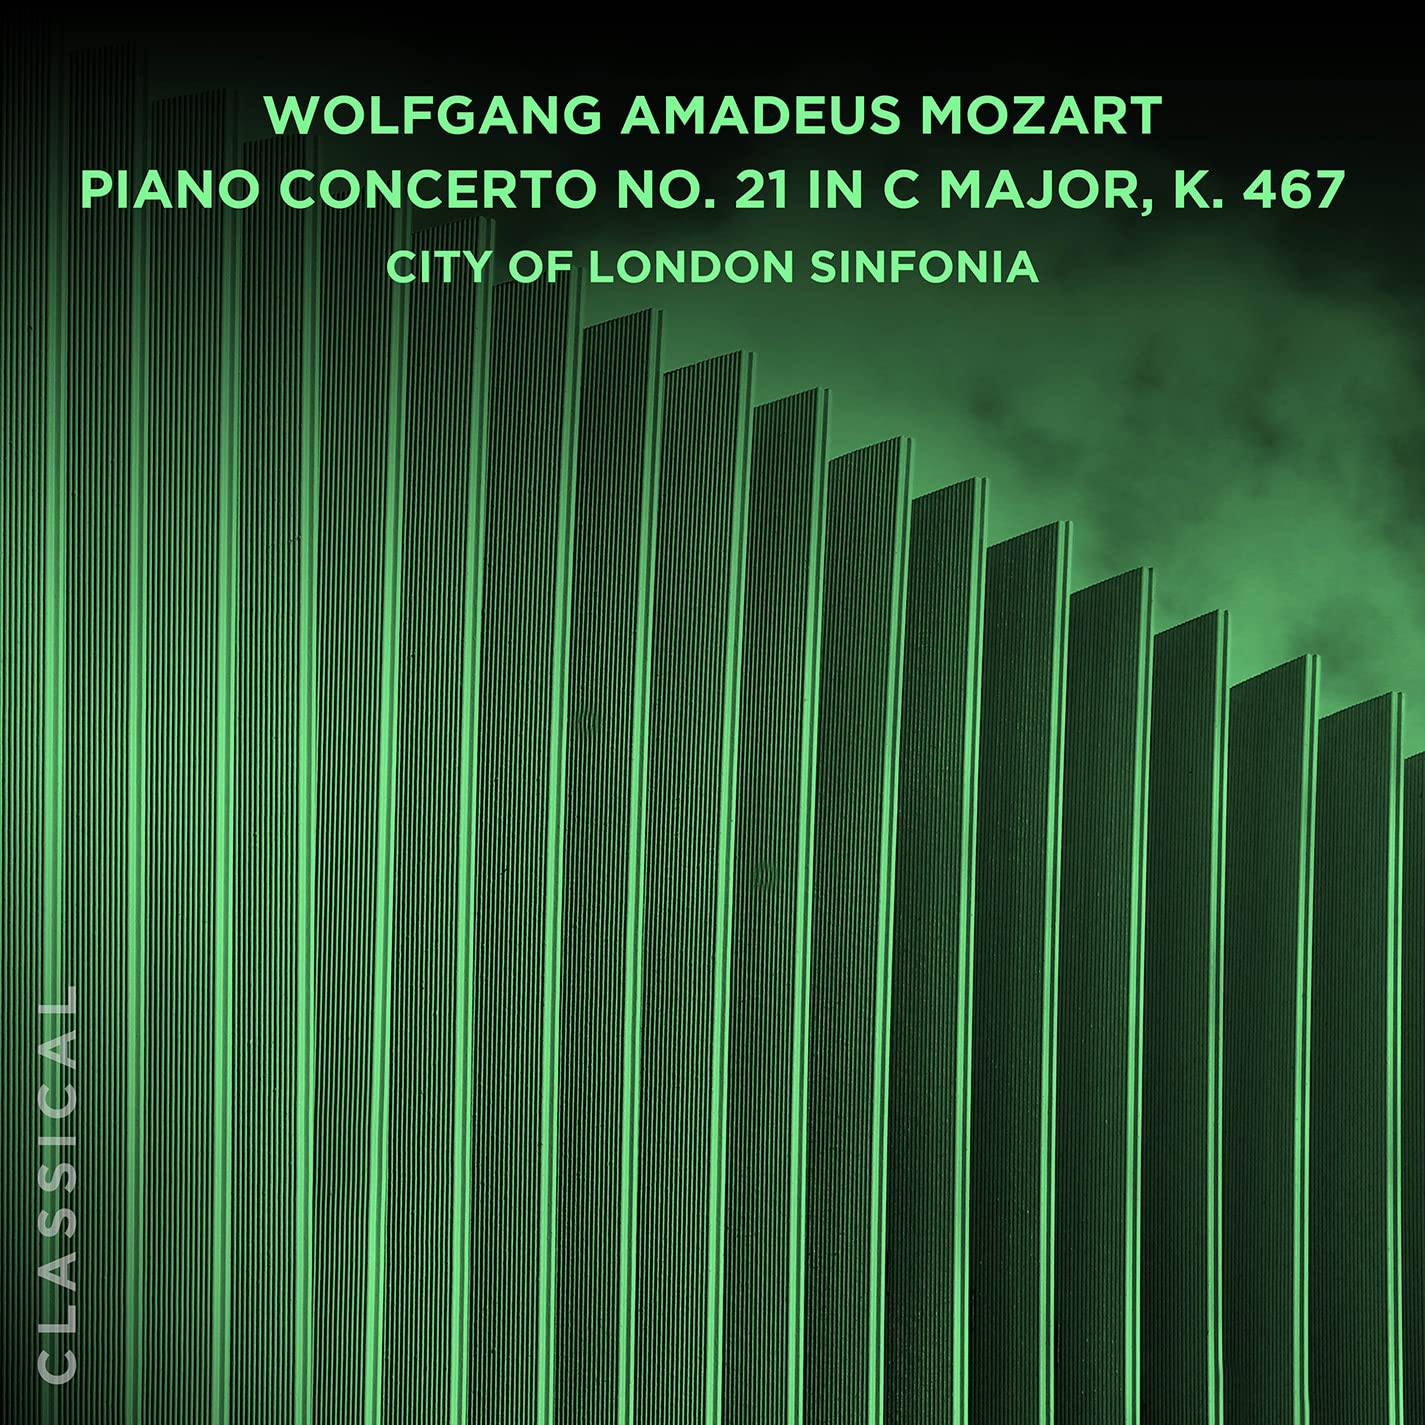 Wolfgang Amadeus Mozart: Piano Concerto No. 21 in C Major, K. 467